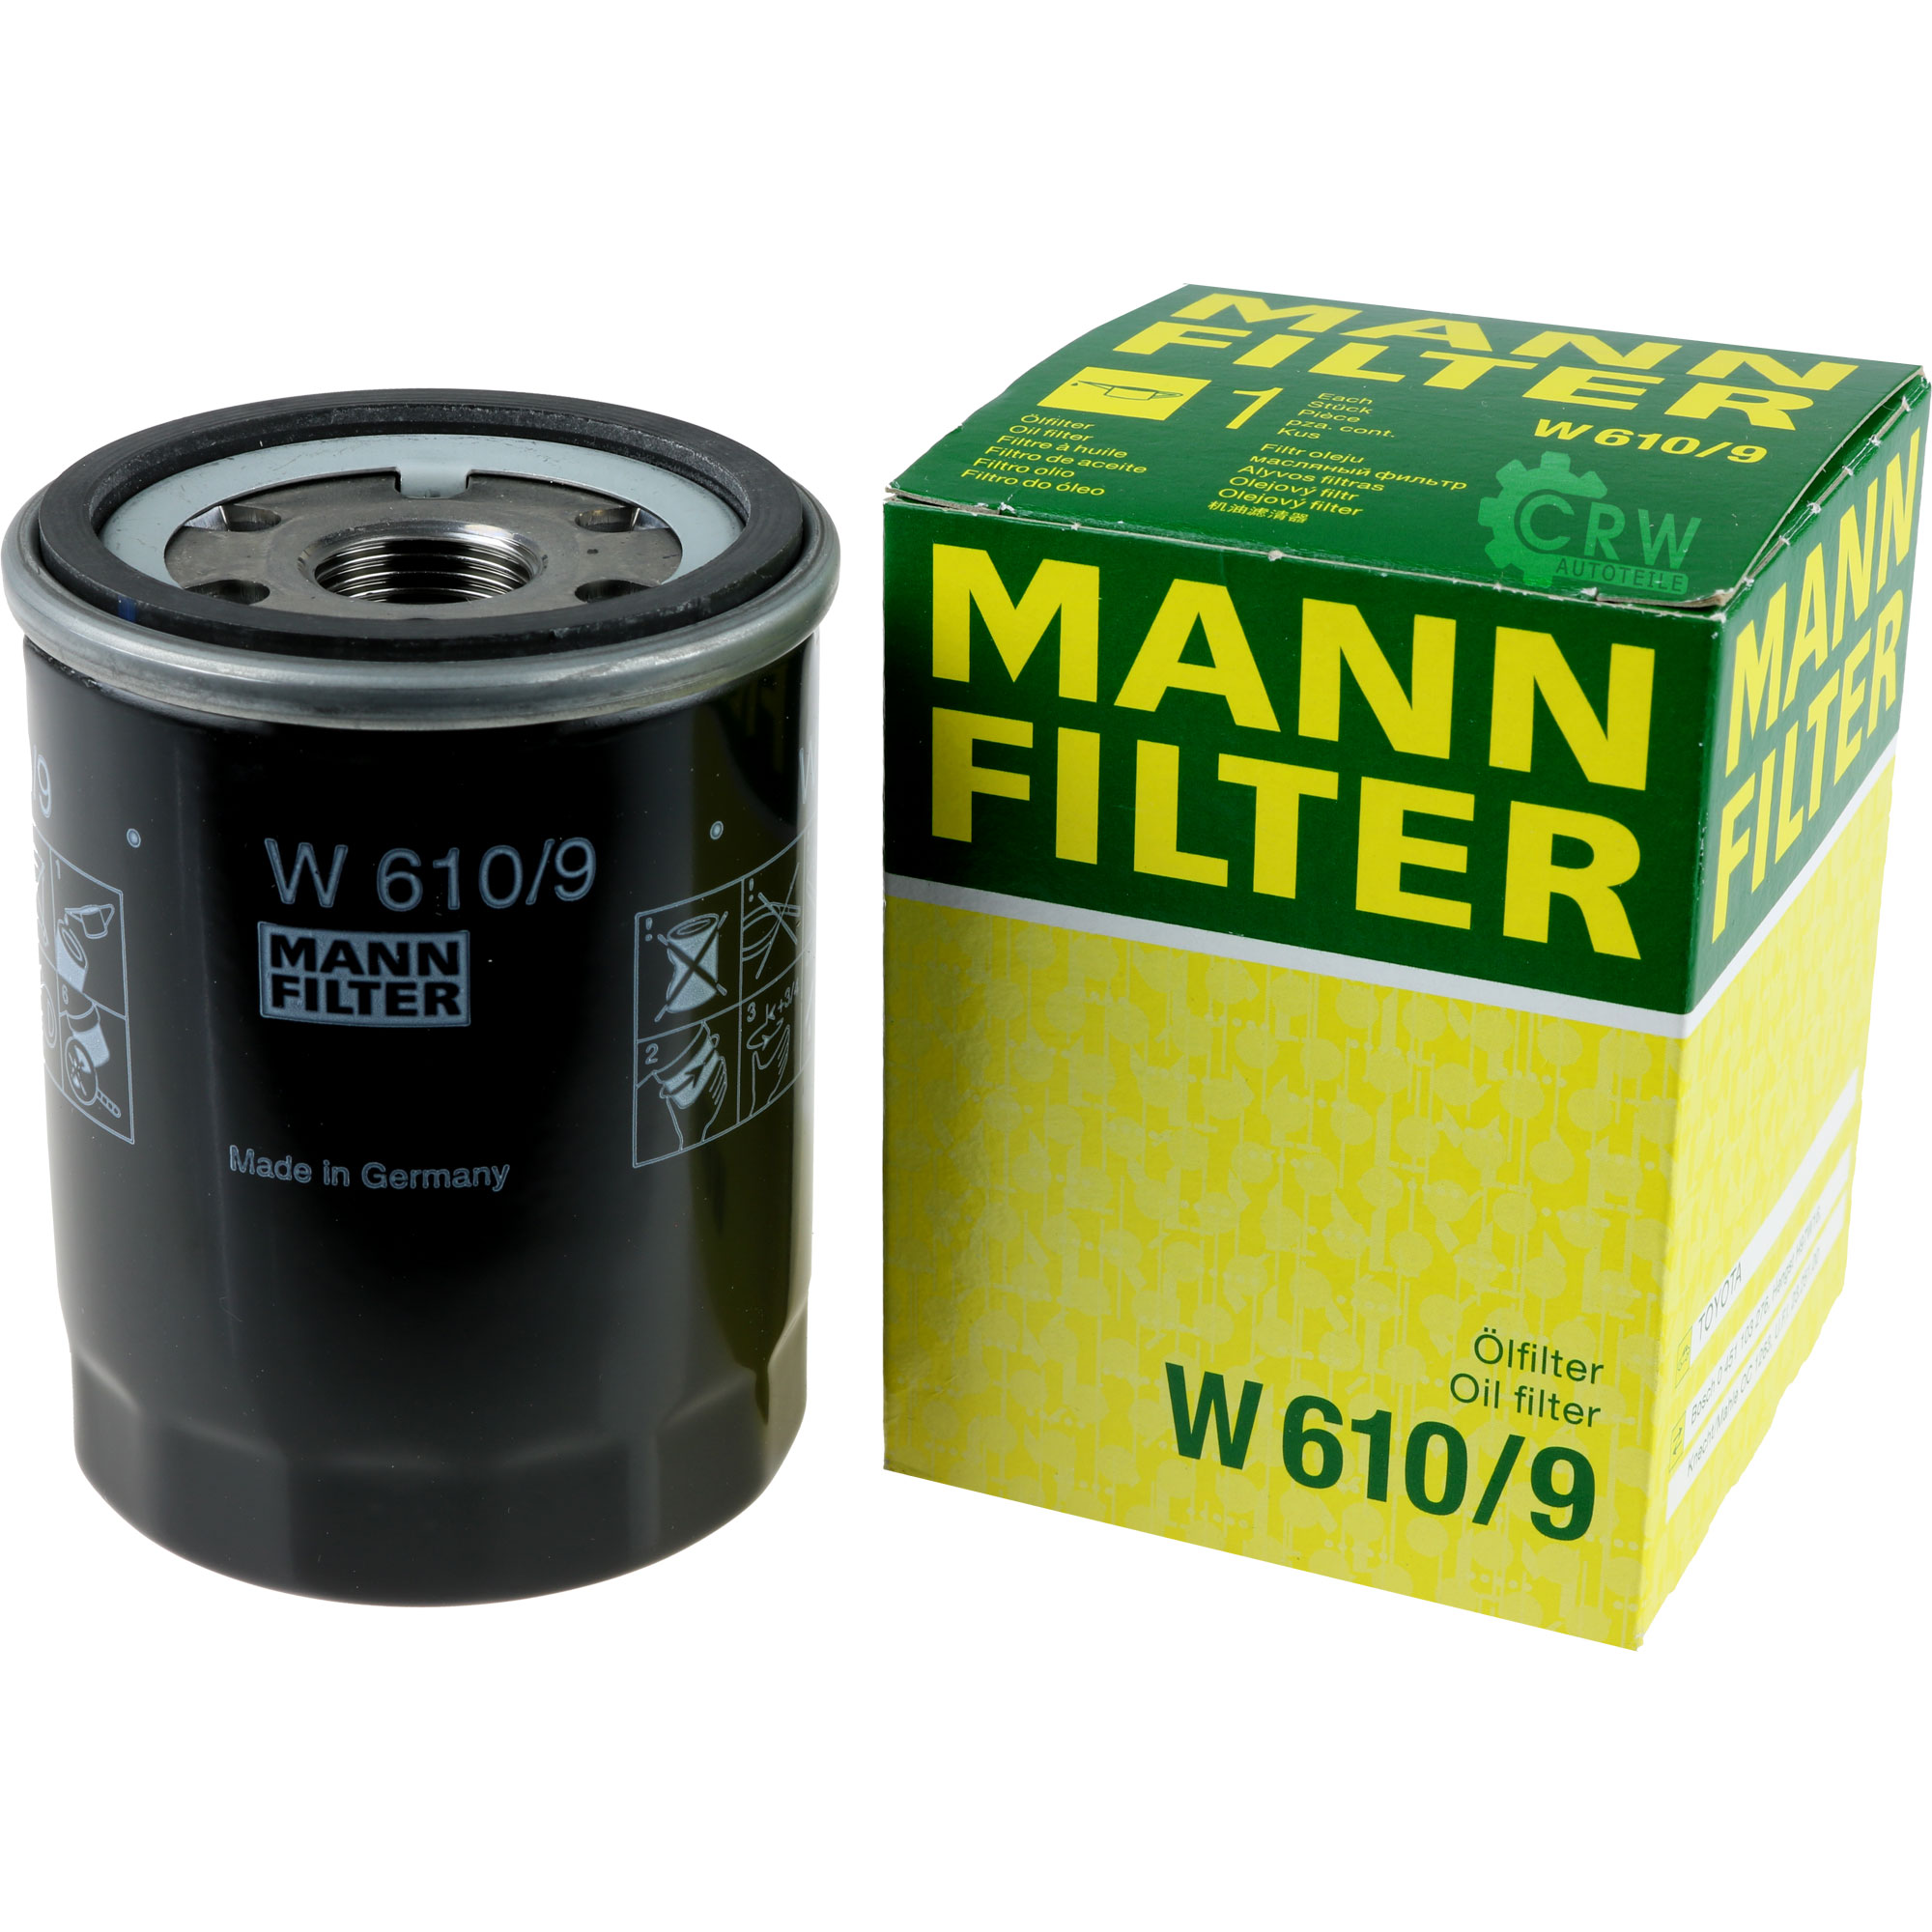 MANN-FILTER Ölfilter W 610/9 Oil Filter